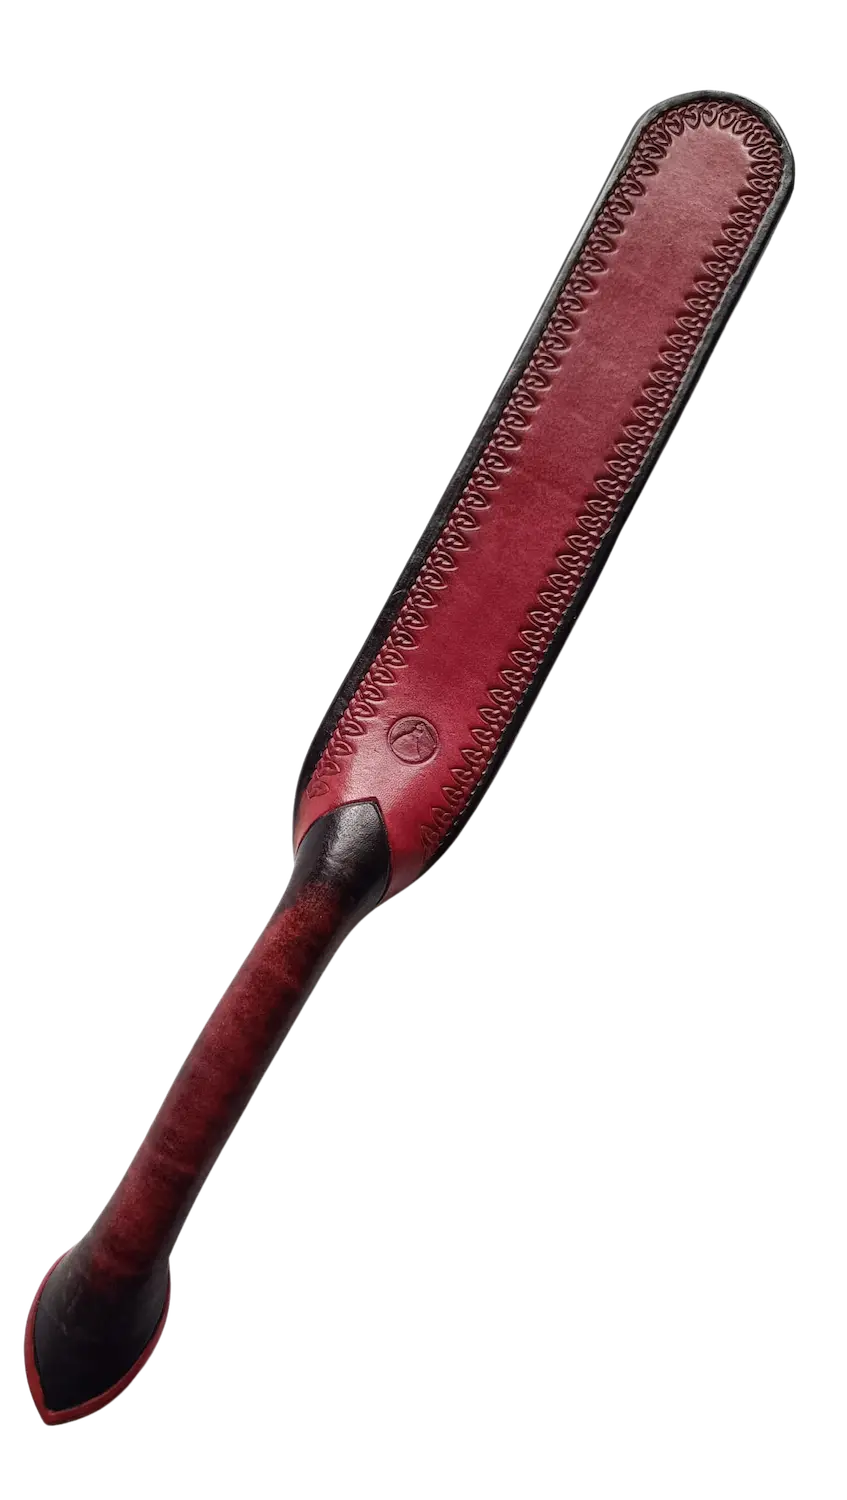 Spankingová lžíce, neboli plácačka ze silné hovězí kůže s červenočerným dekorem a raznicí. Cena 3500 Kč